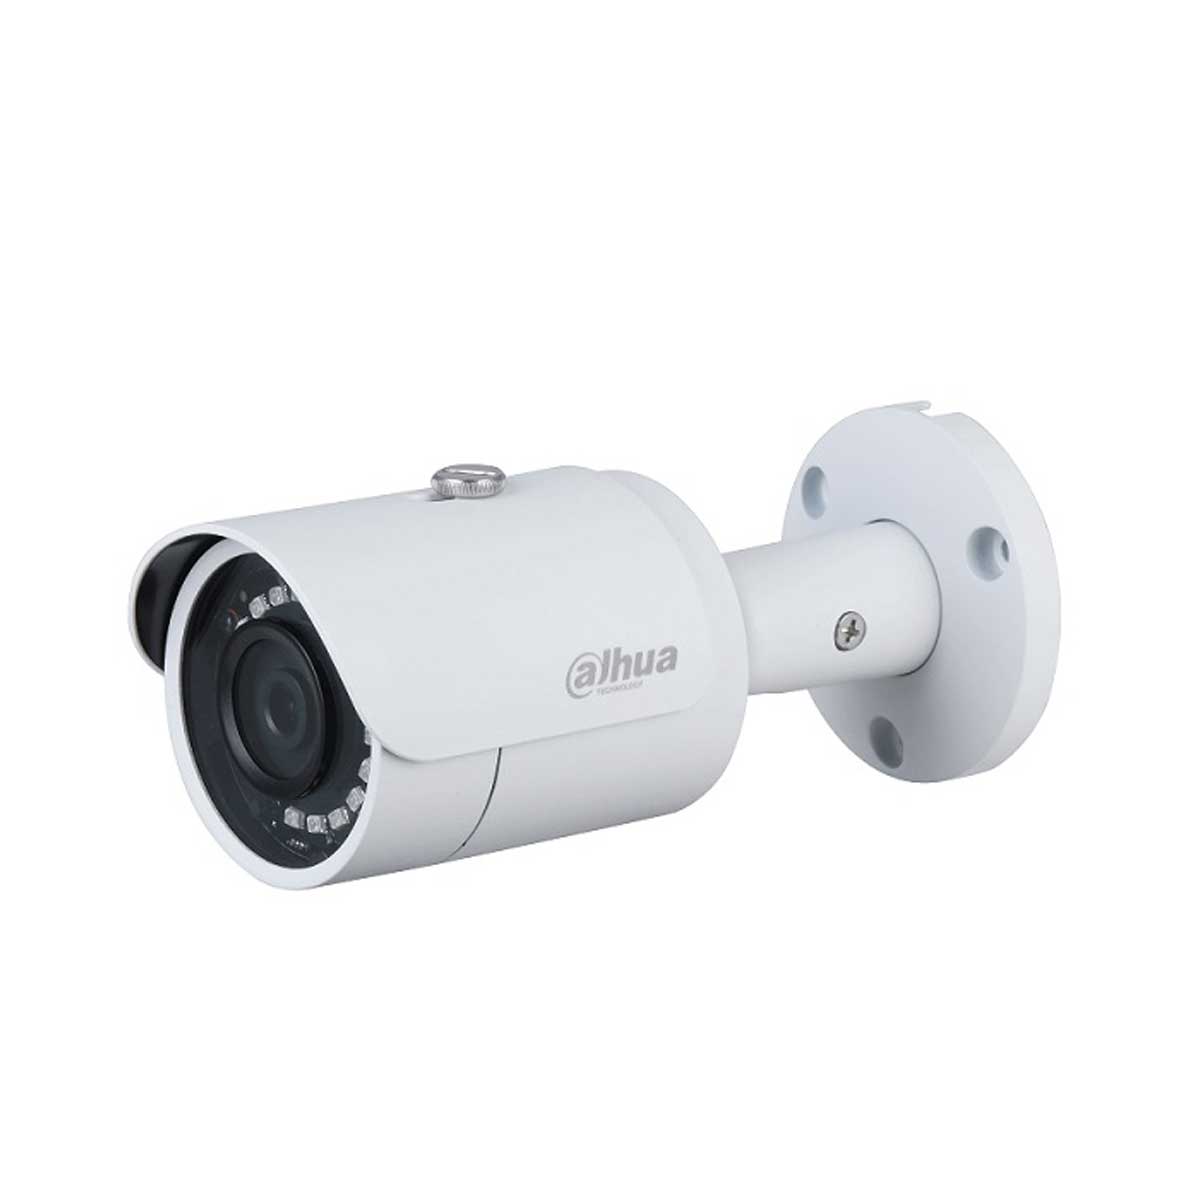  Camera thân IP Dahua DH-IPC-HFW1230S-S5 2MP, chuẩn nén H265, hồng ngoại 30m 